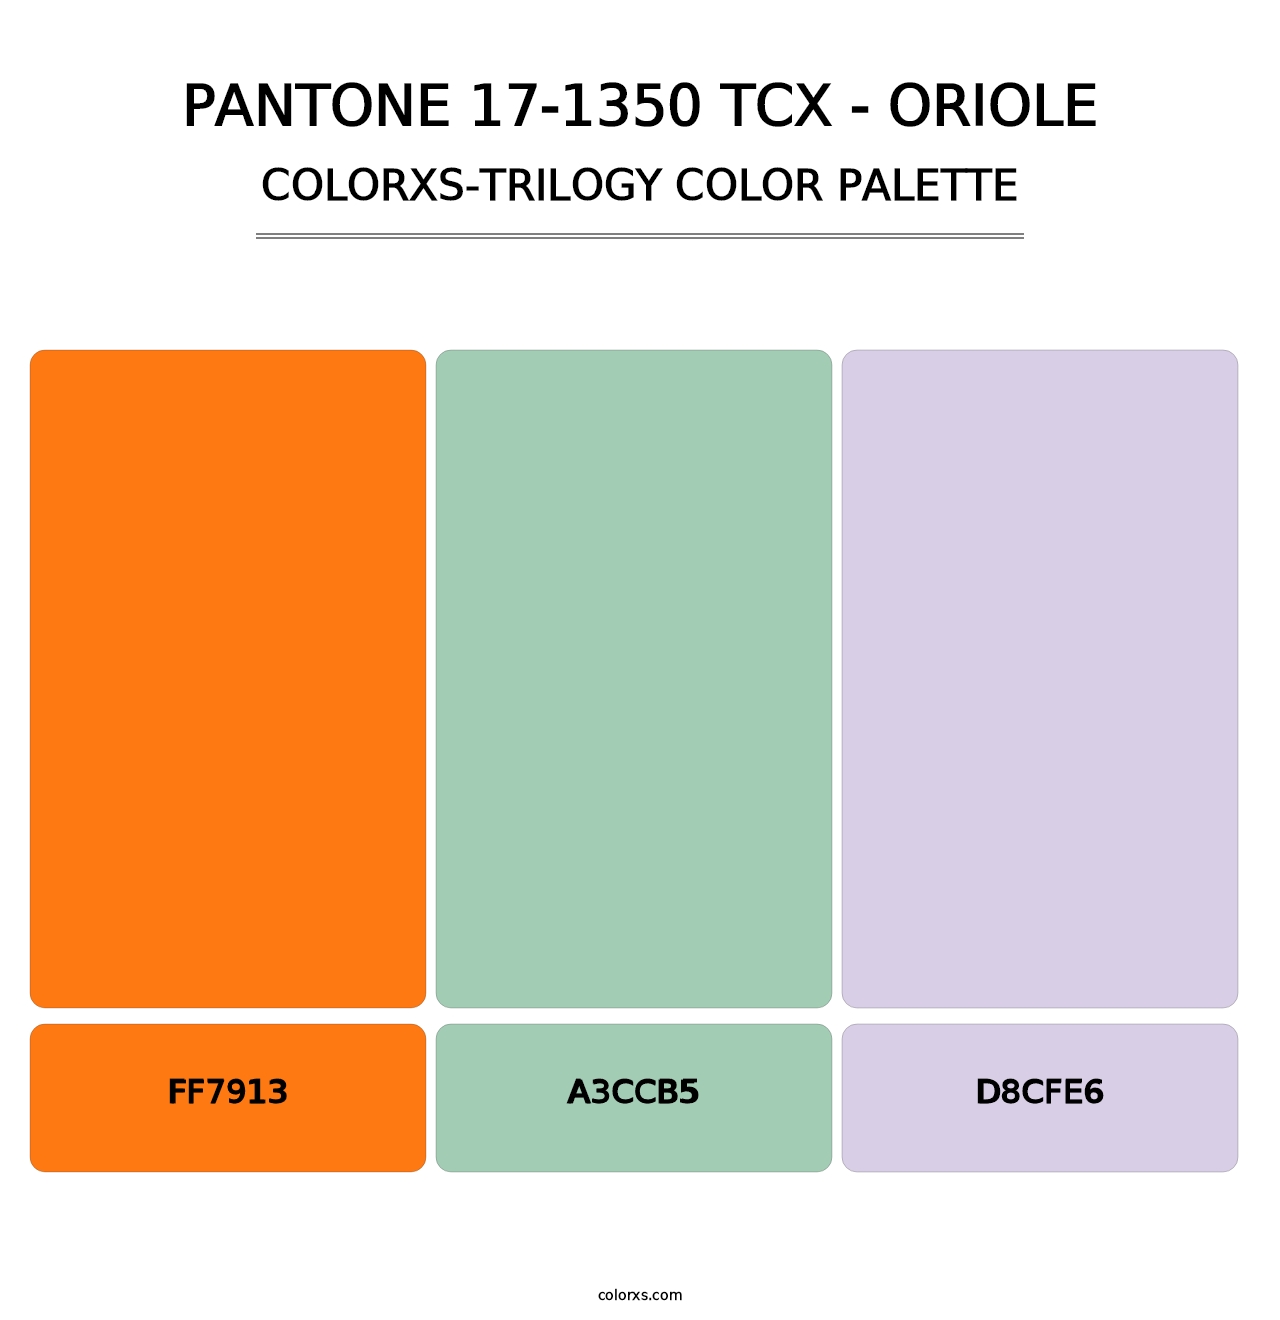 PANTONE 17-1350 TCX - Oriole - Colorxs Trilogy Palette